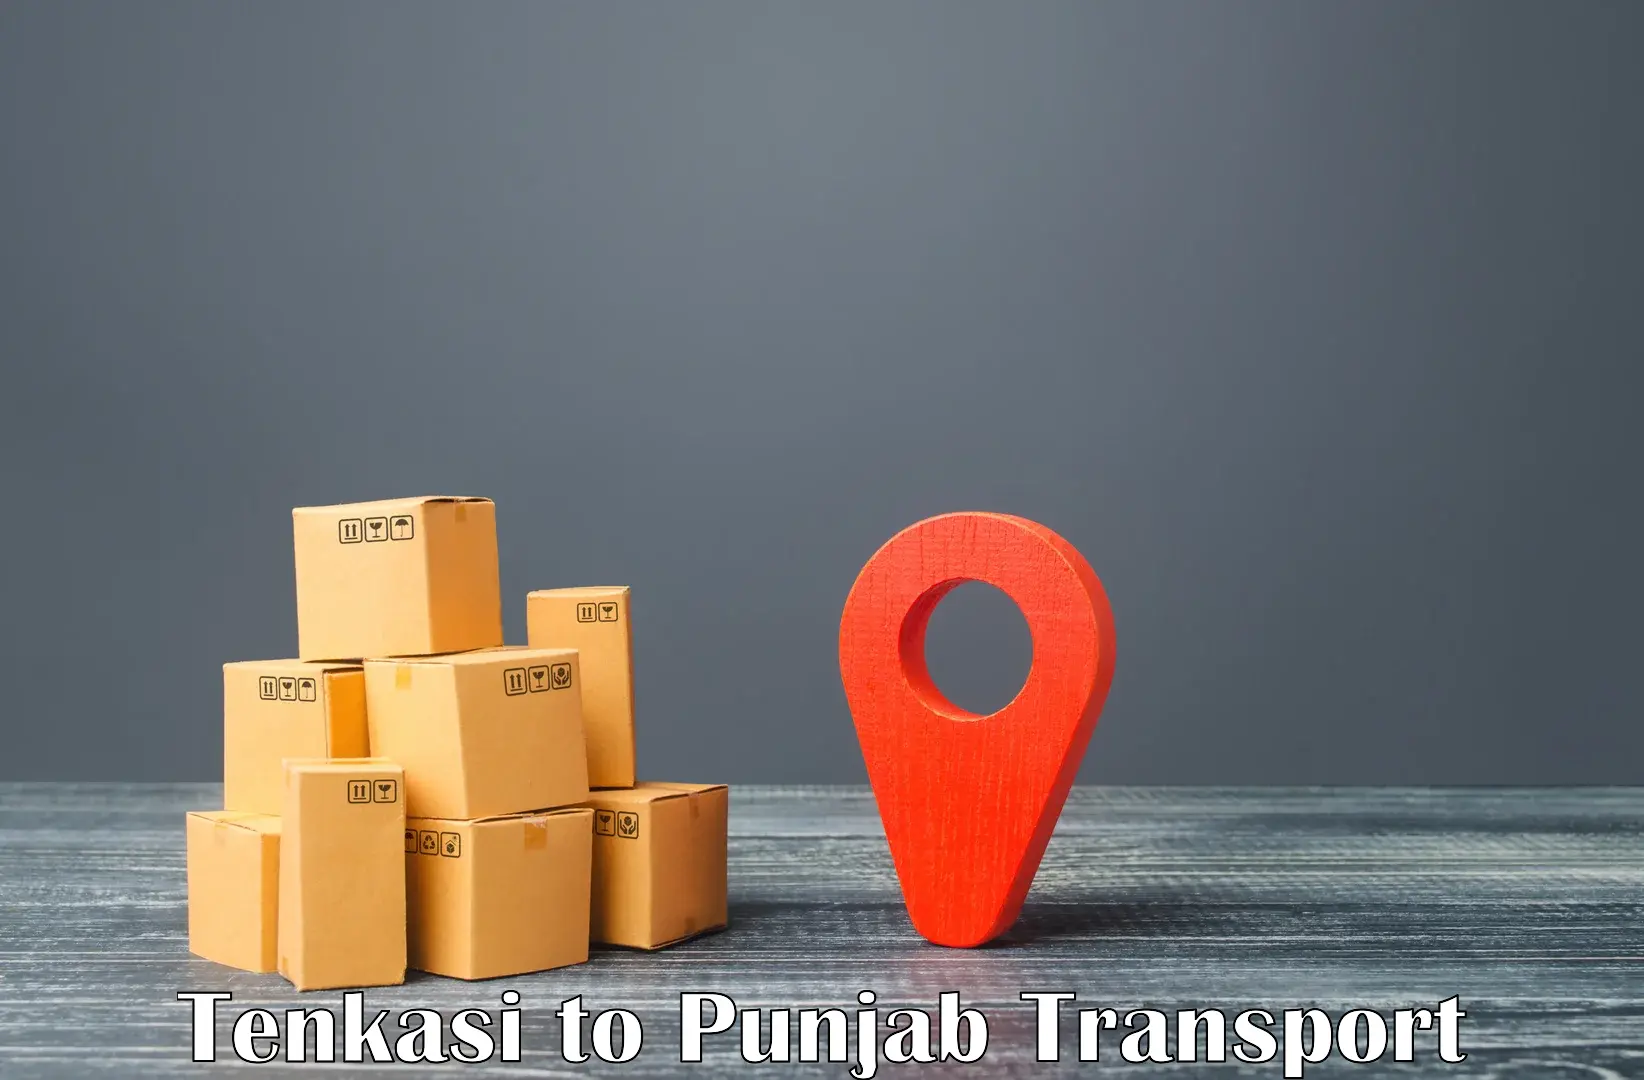 Online transport booking Tenkasi to Ajnala